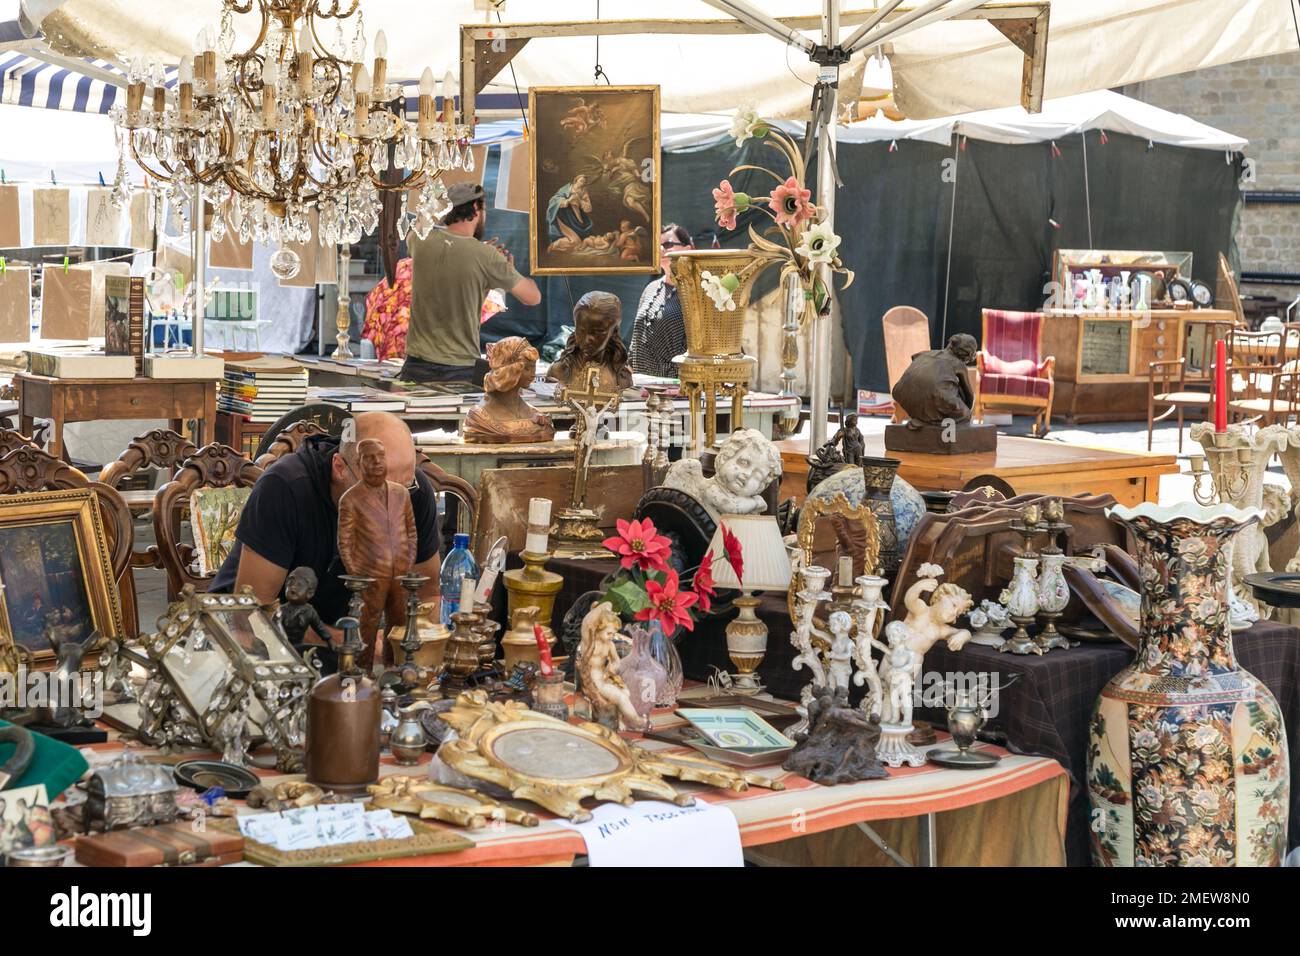 Antique market in Arezzo, Italy Stock Photo Alamy